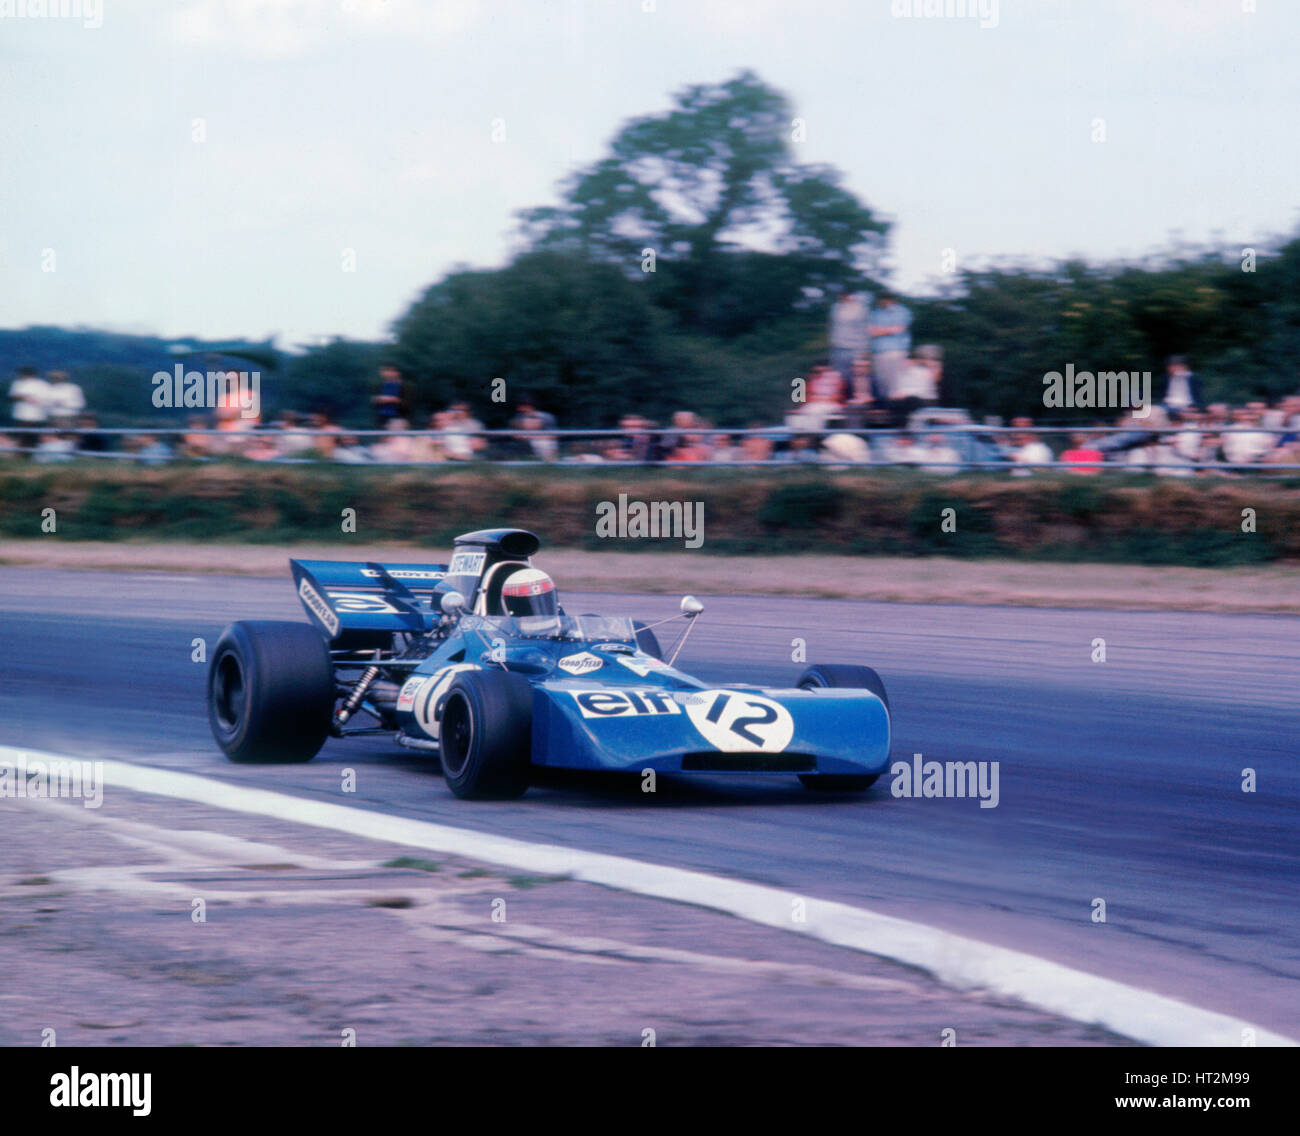 Tyrrell 003 von Jackie Stewart in 1971 British GP angetrieben. Künstler: unbekannt. Stockfoto